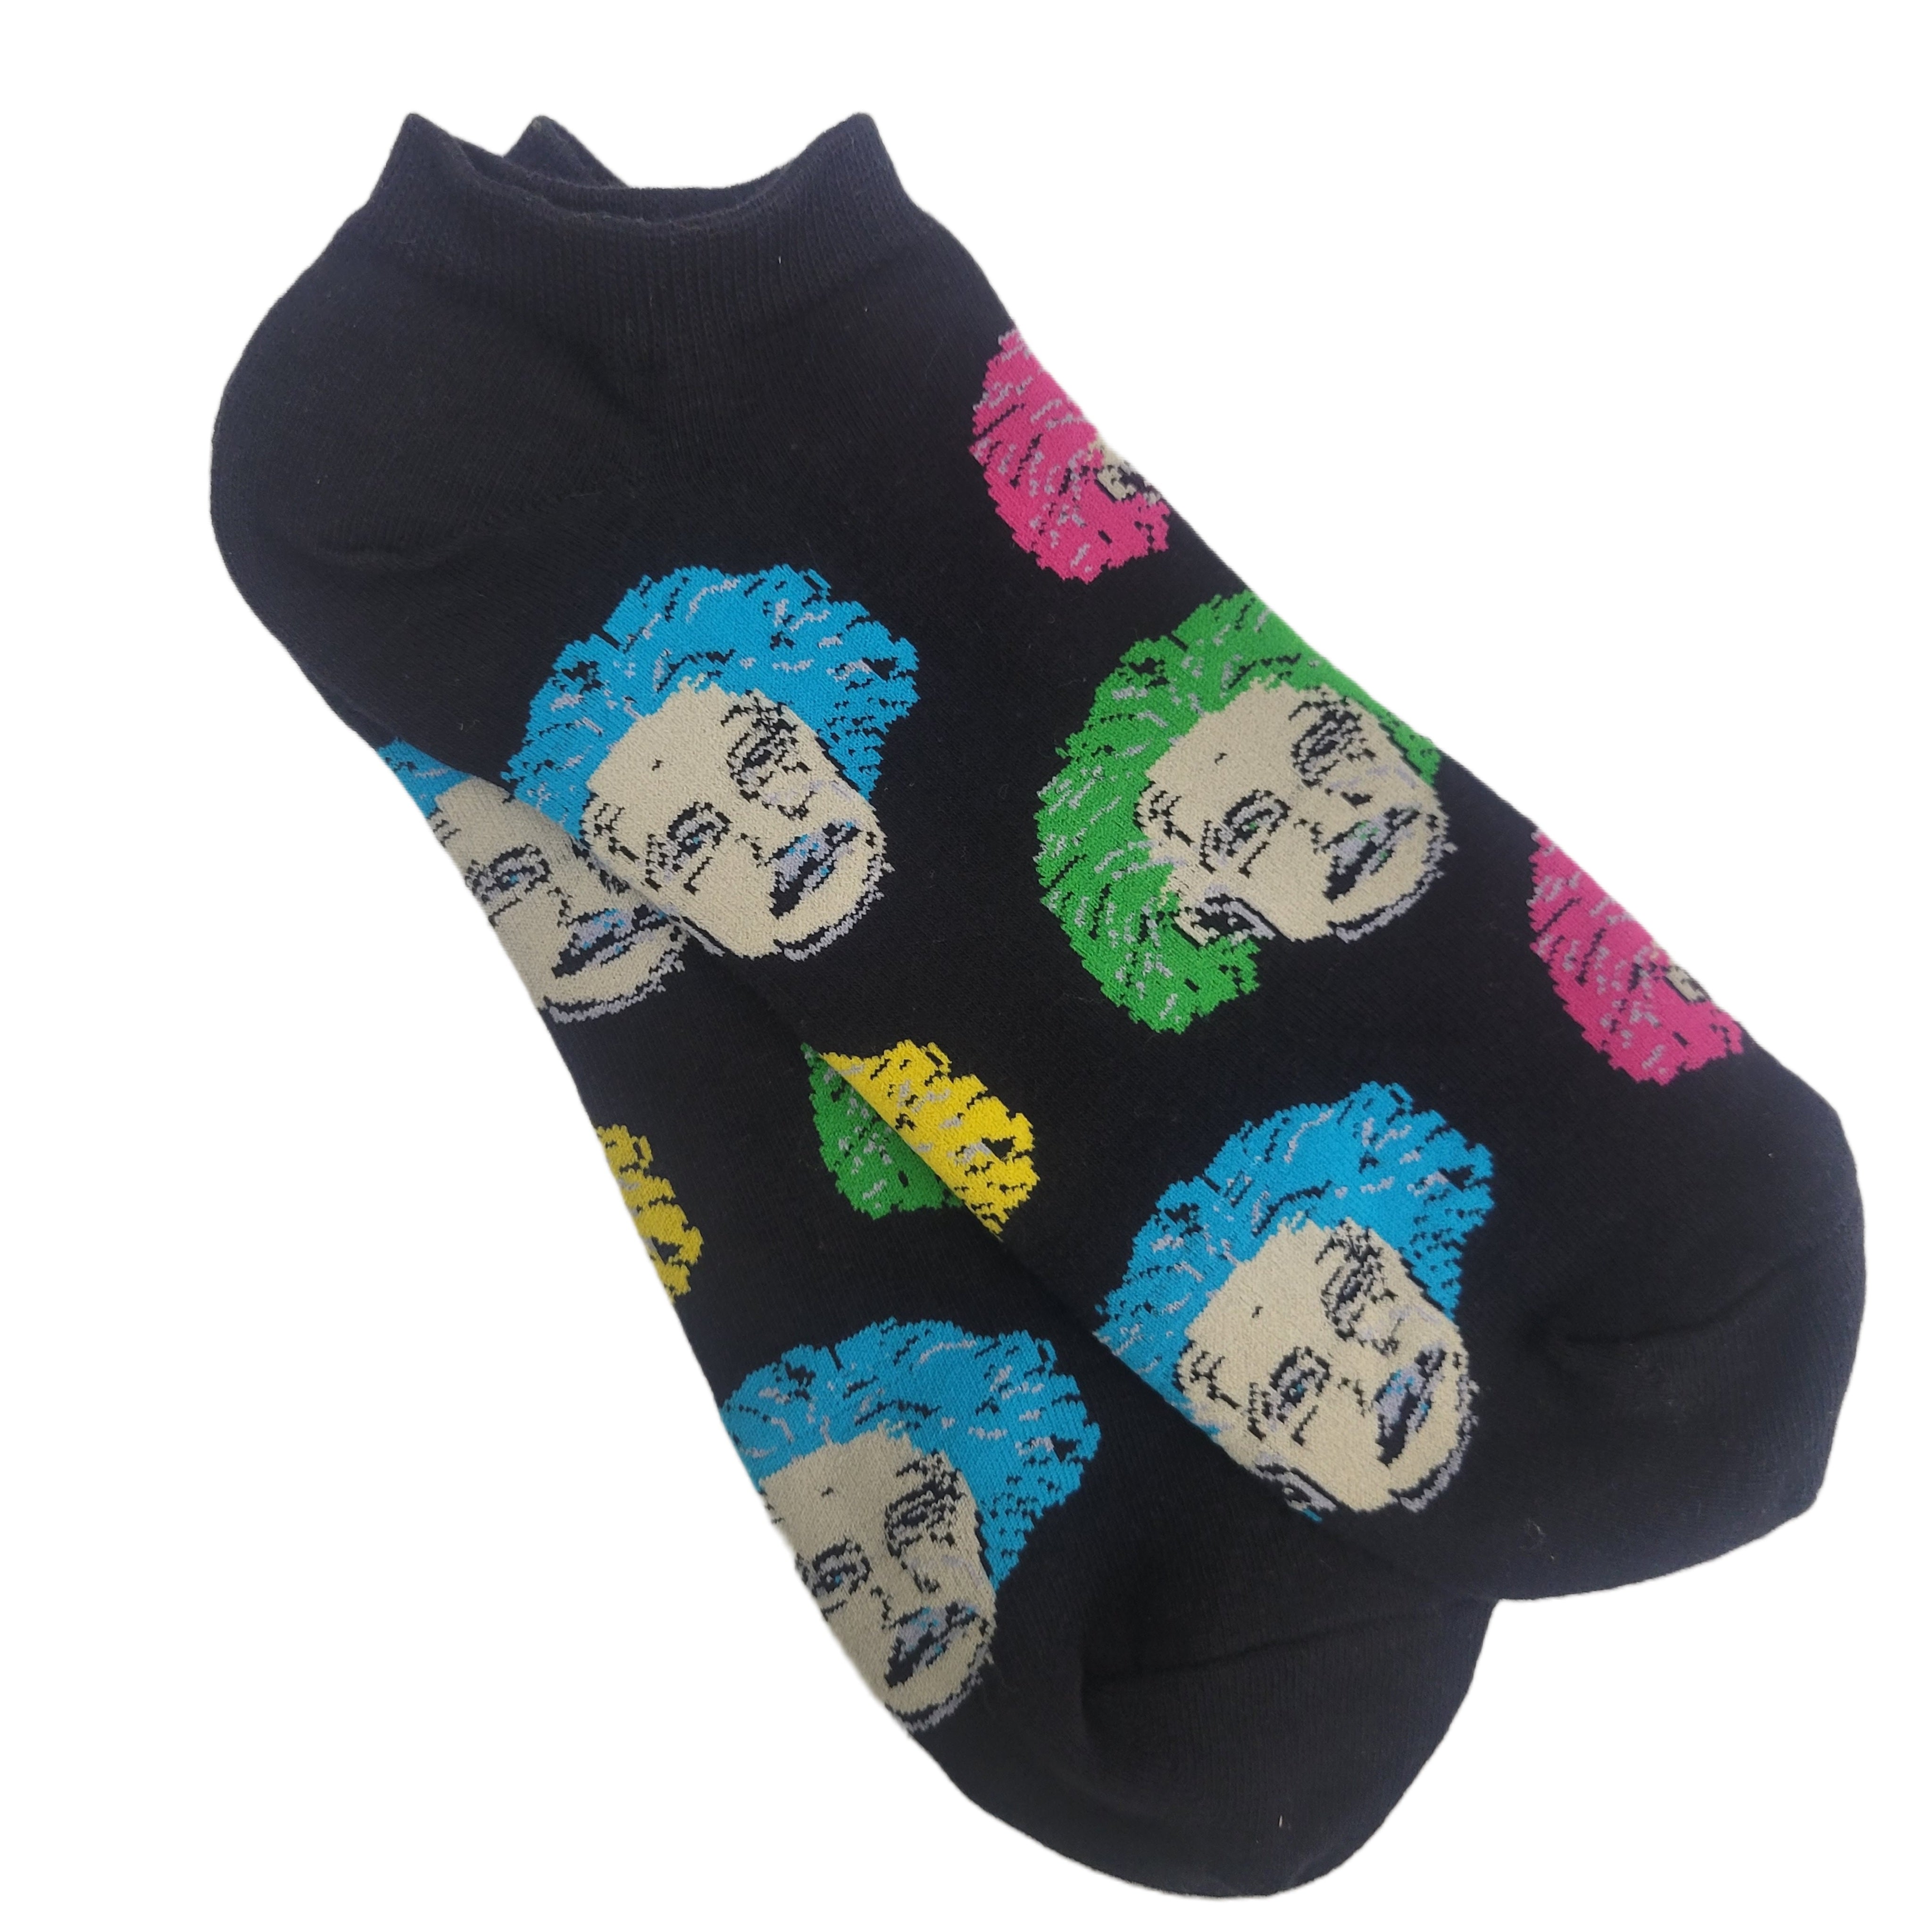 Albert Einstein Ankle Socks (Adult Large)